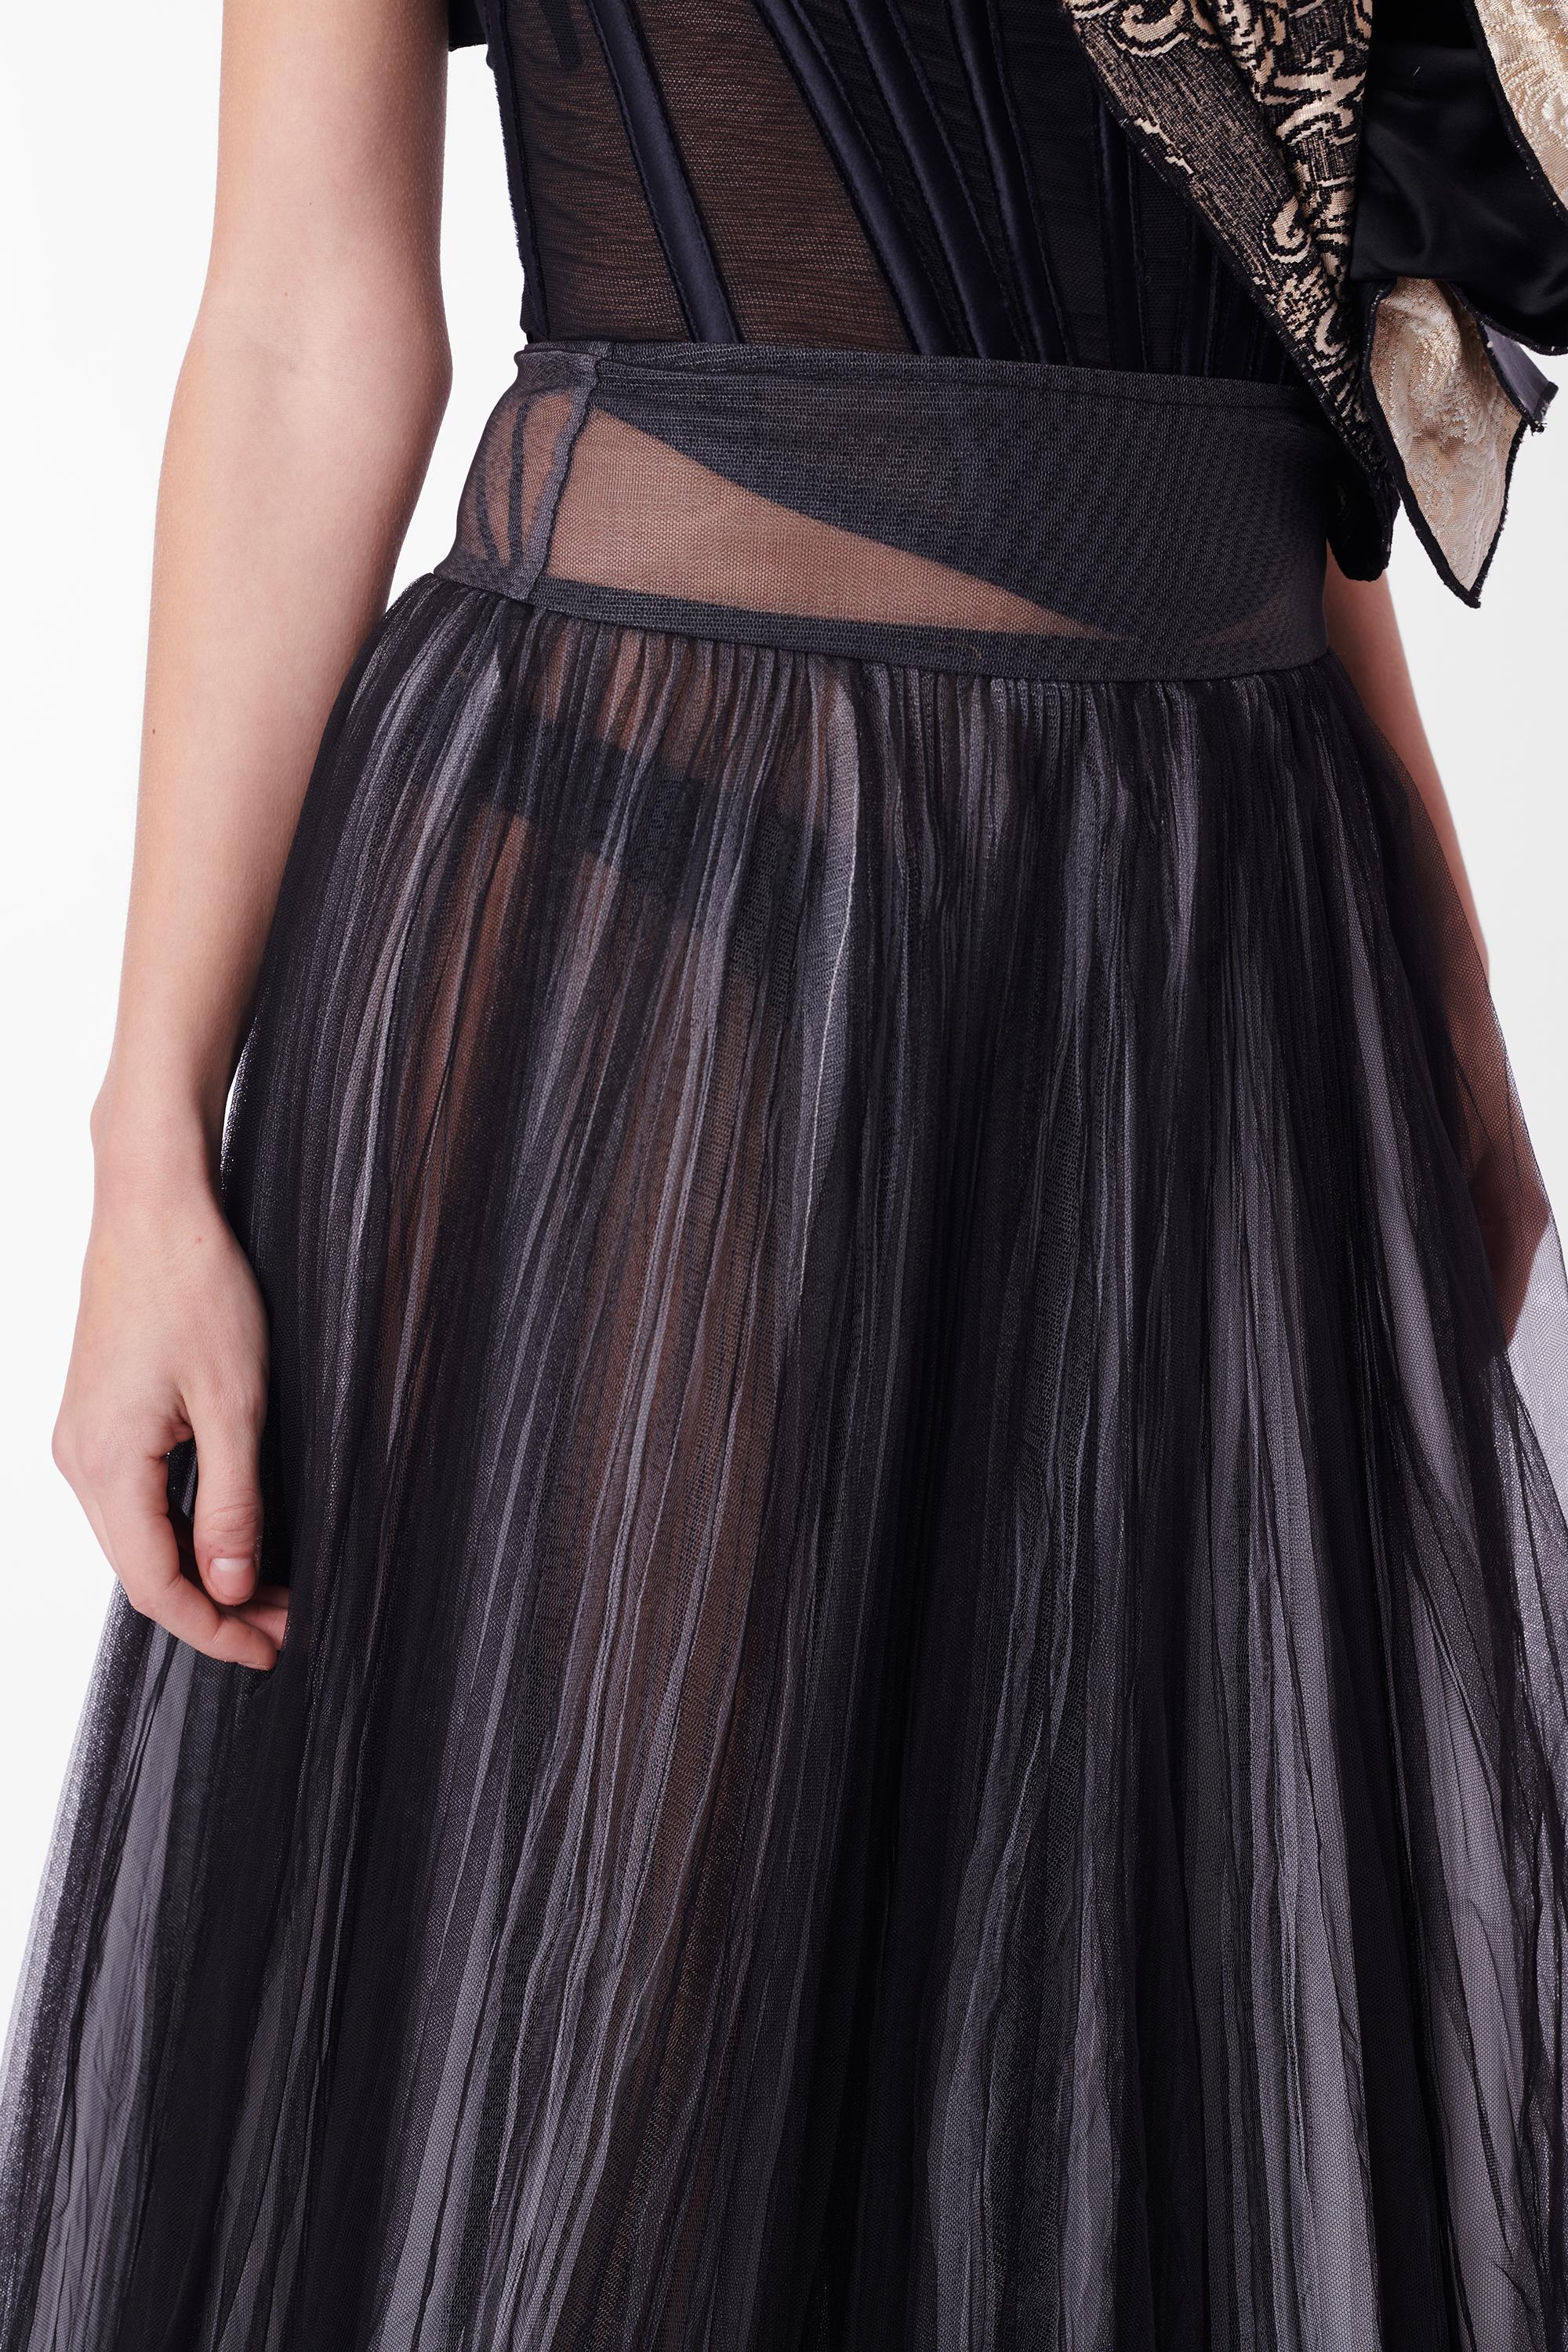 Women's Vintage Black White Layered Tulle Sheer Skirt For Sale